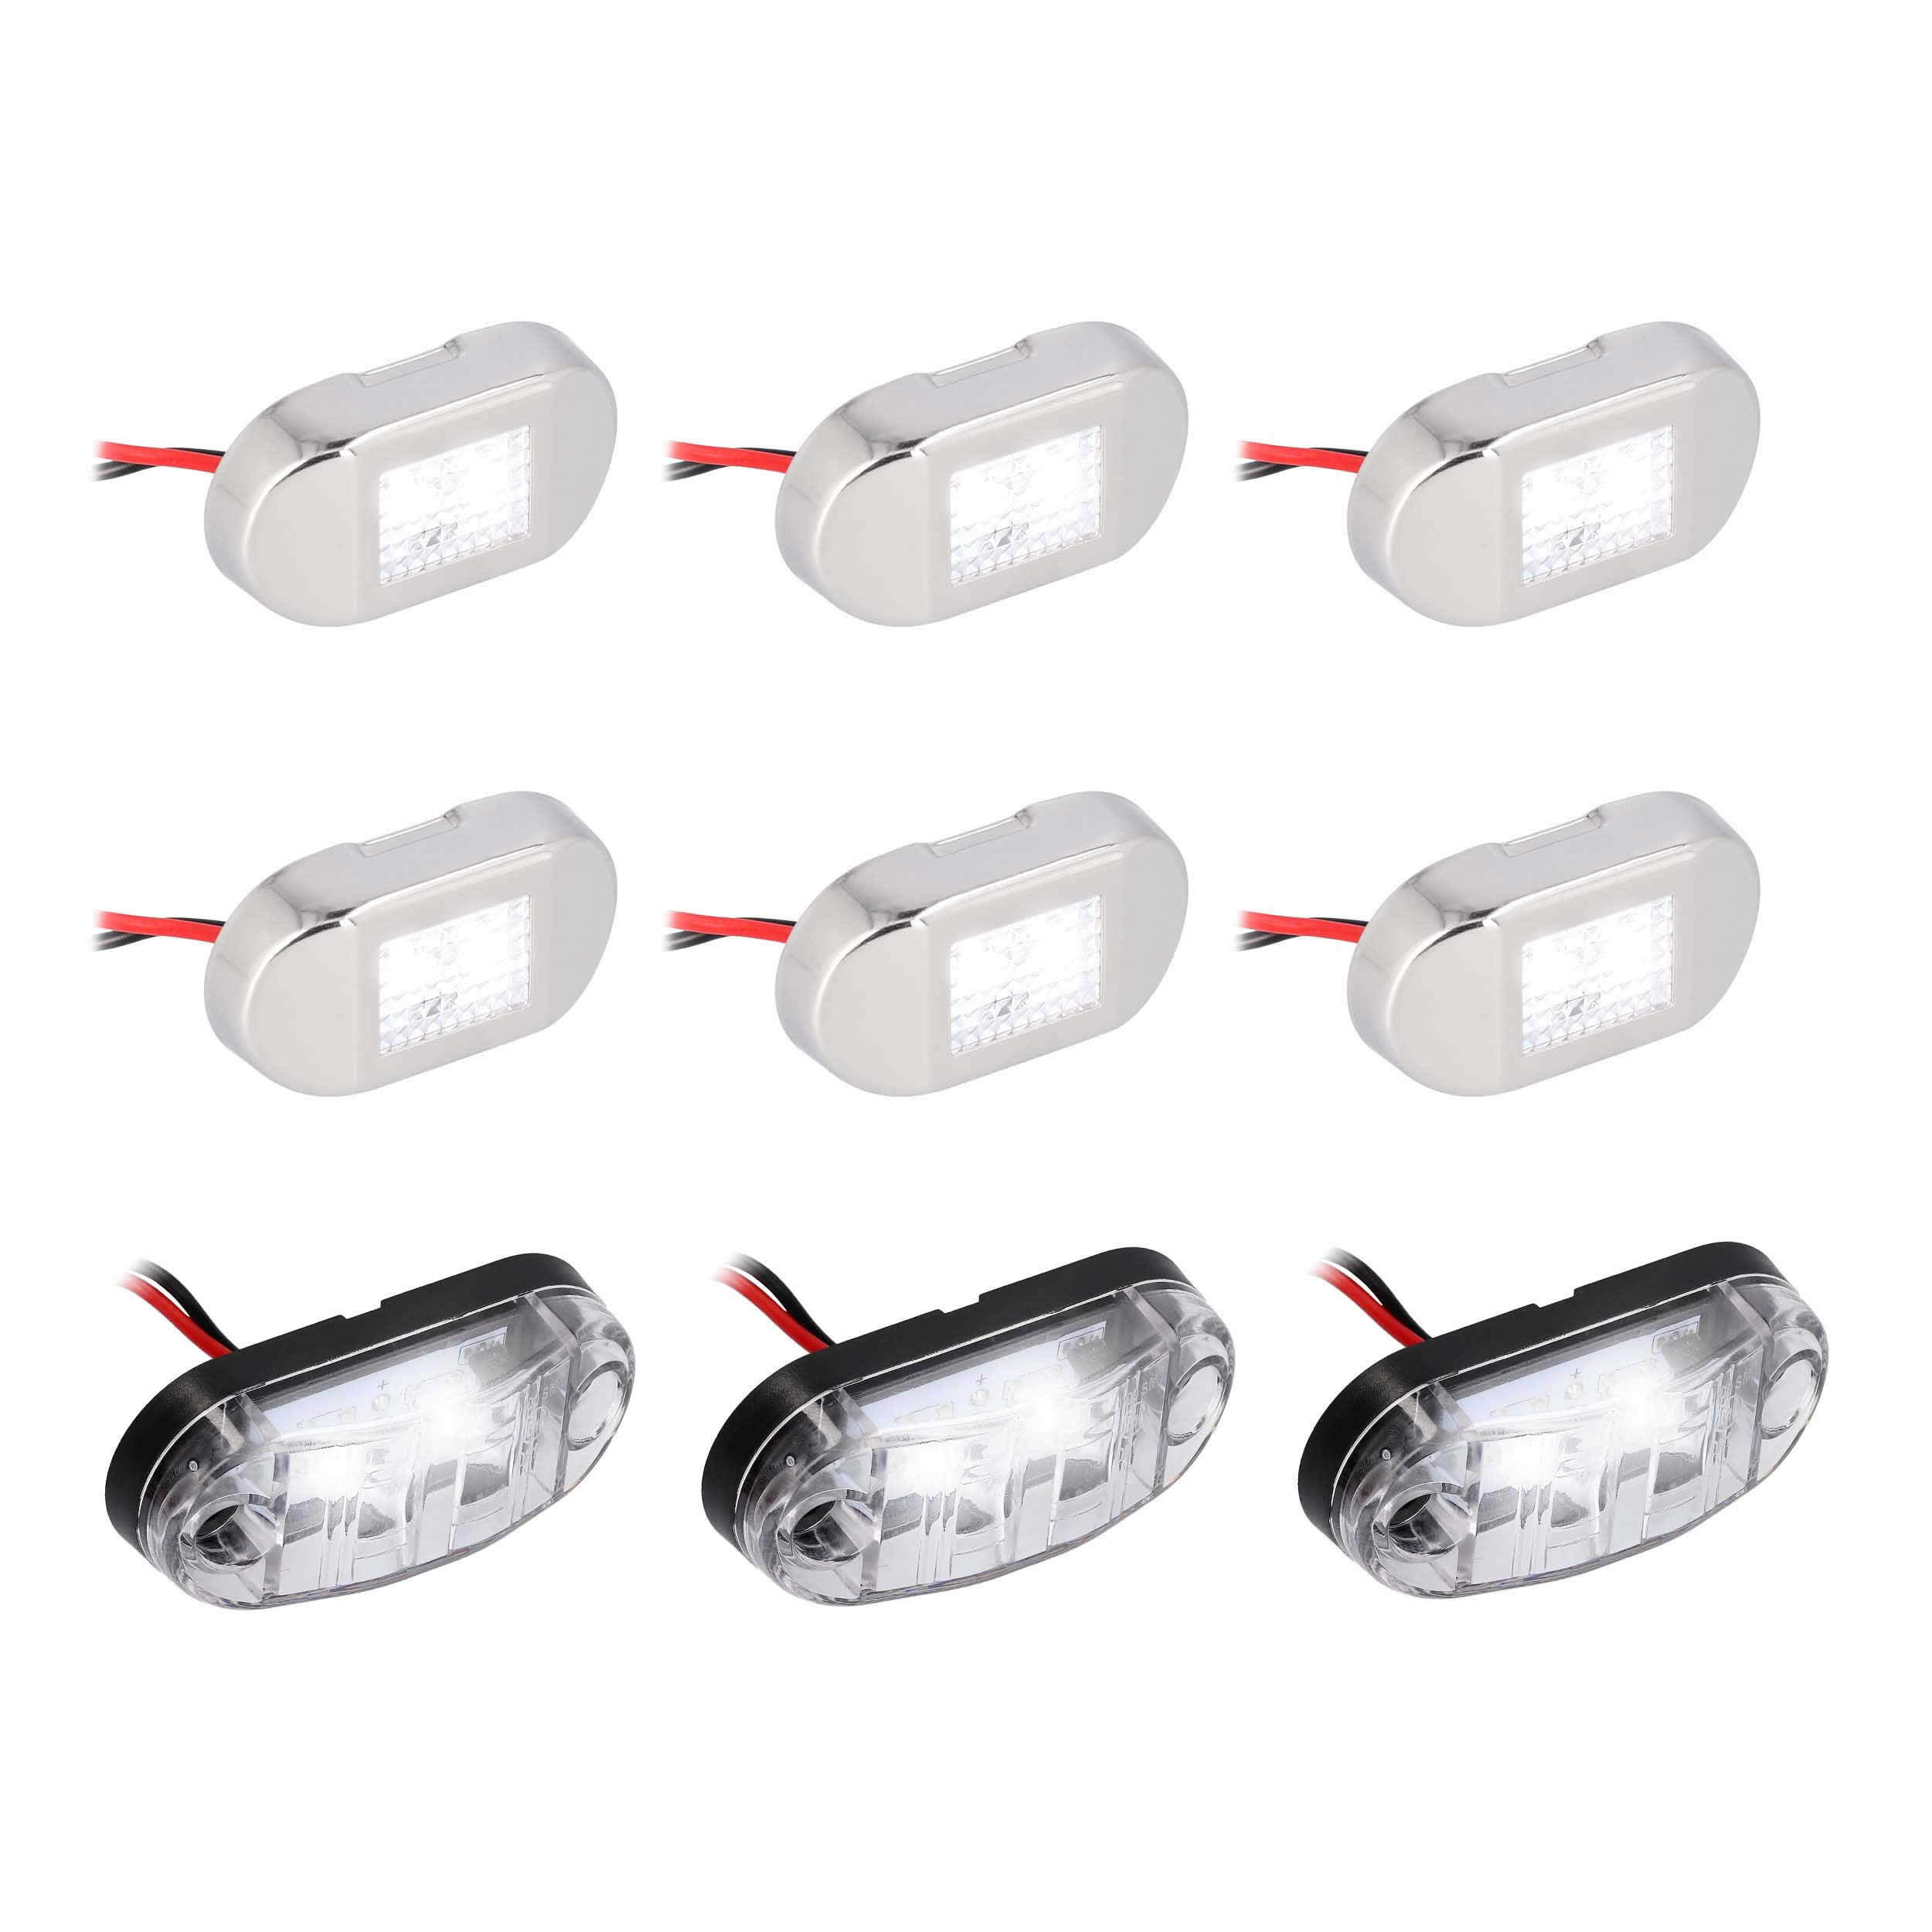 White LED Marine Accent Lighting Kit